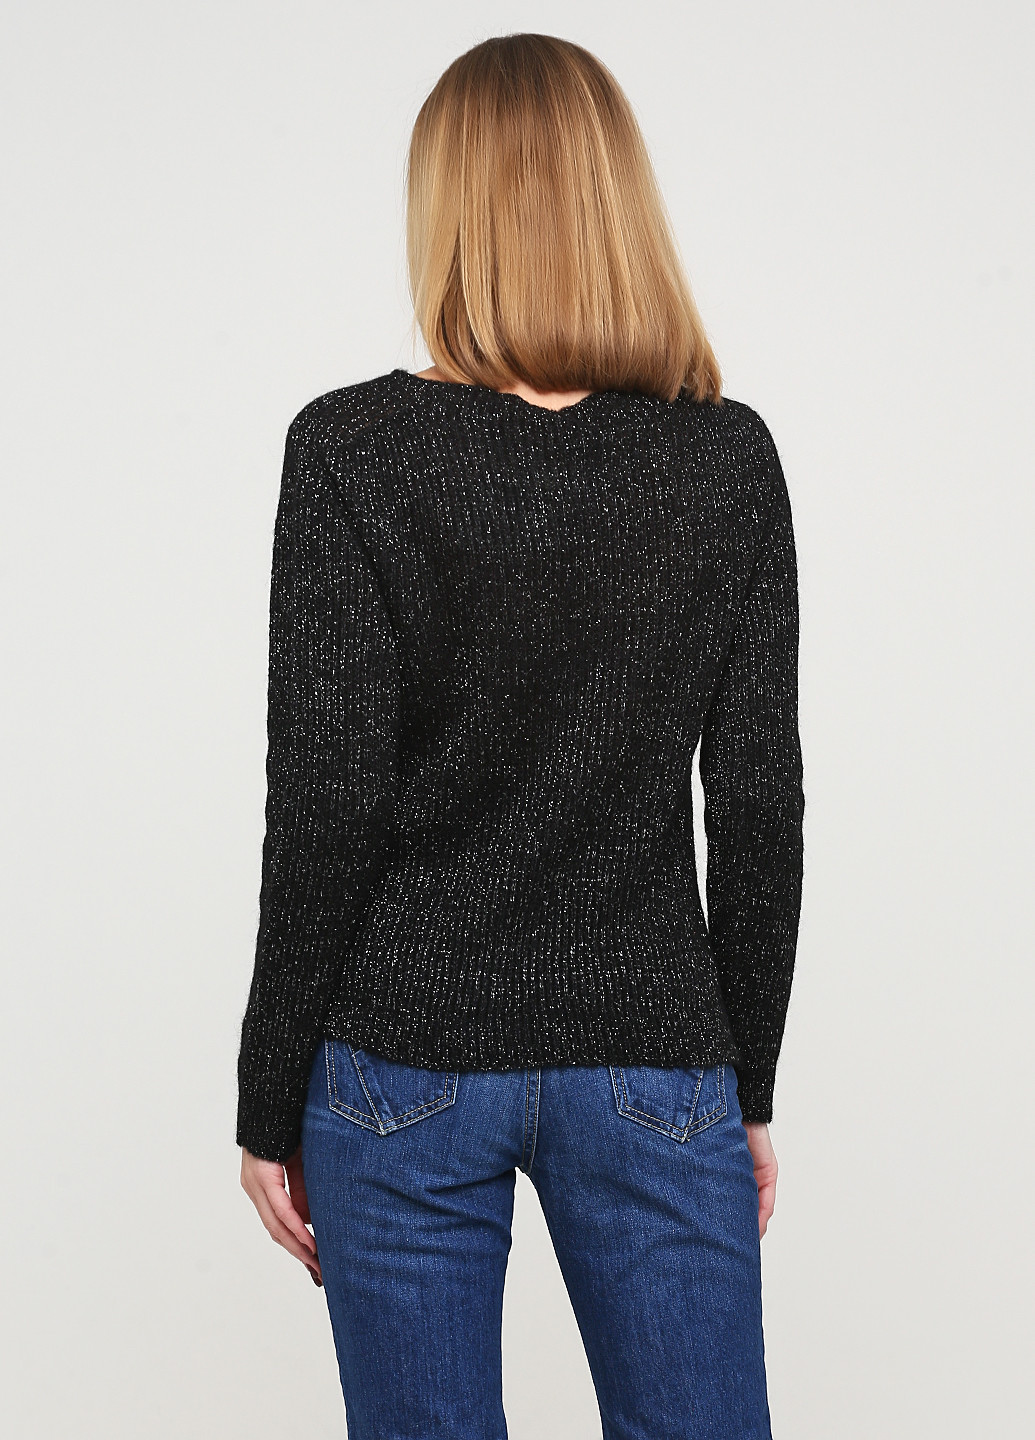 Черный демисезонный свитер пуловер Lola`s